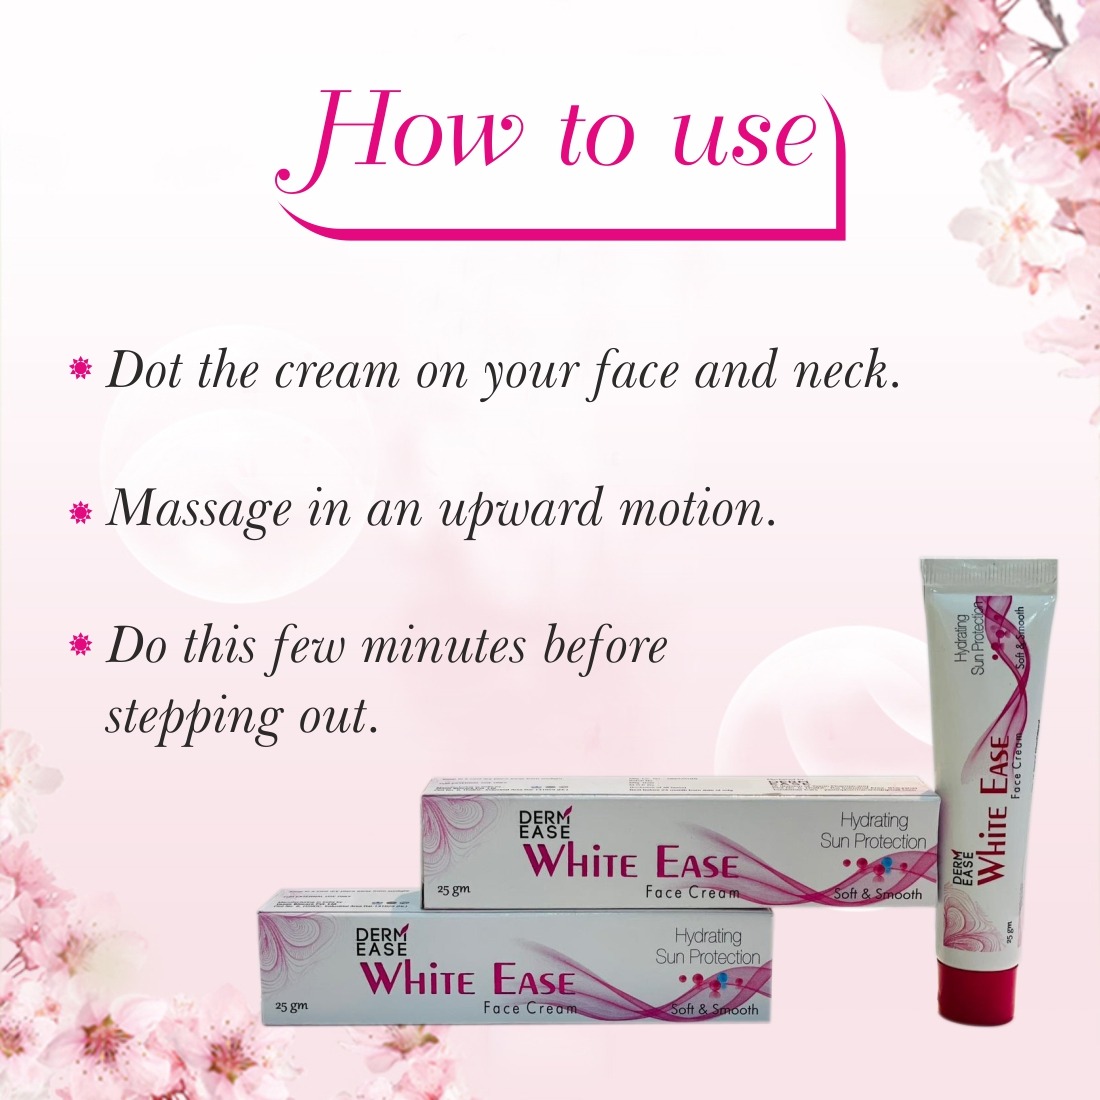 DERM EASE White Ease Face Cream